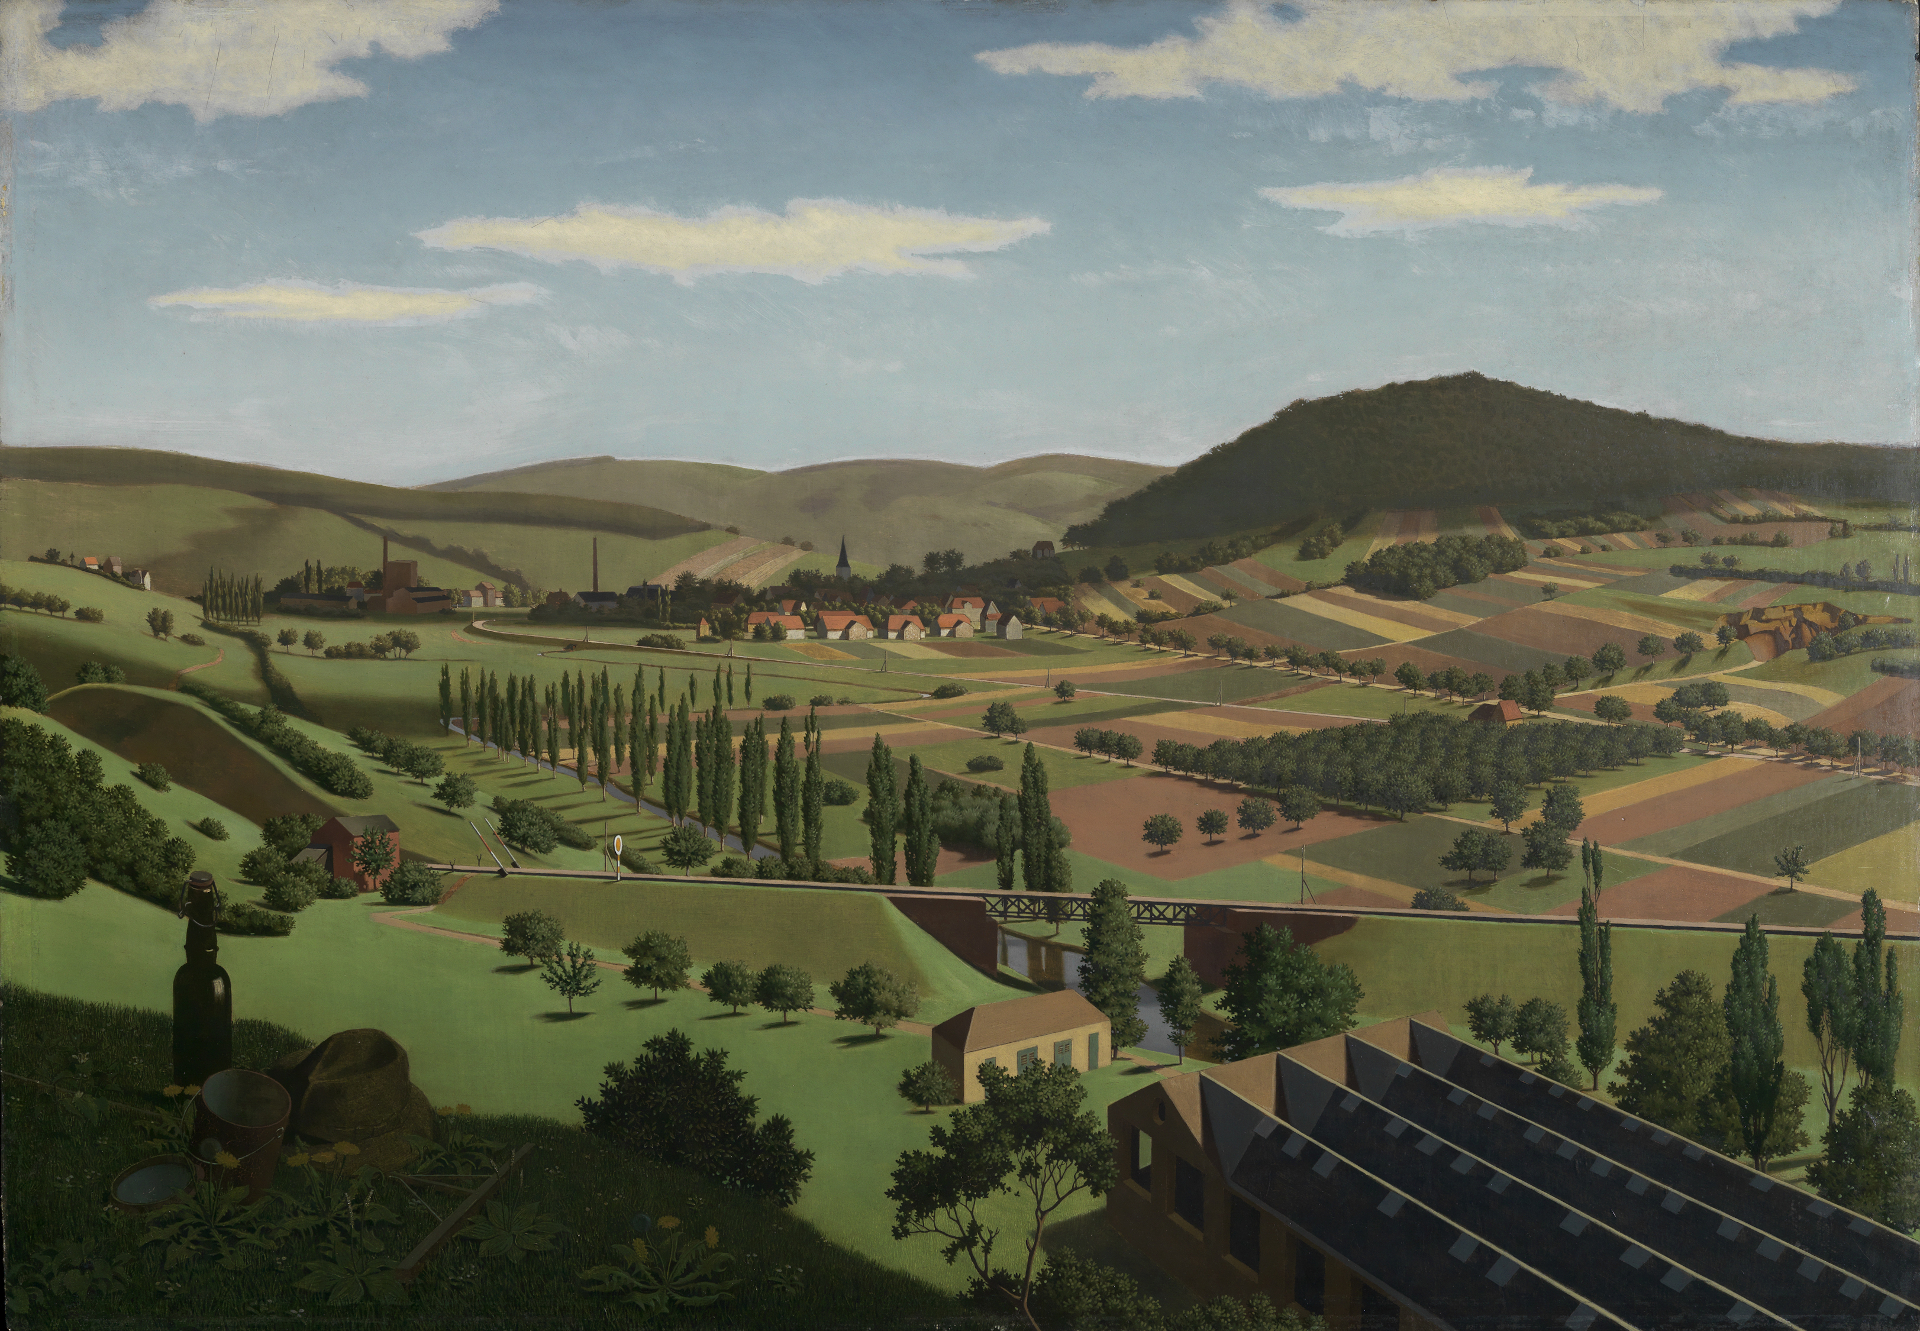 Gemälde Landschaft bei Berghausen von Georg Scholz, entstanden 1924 bis 1925. Es zeigt eine Landschaft durch die eine Bahnstrecke führt.